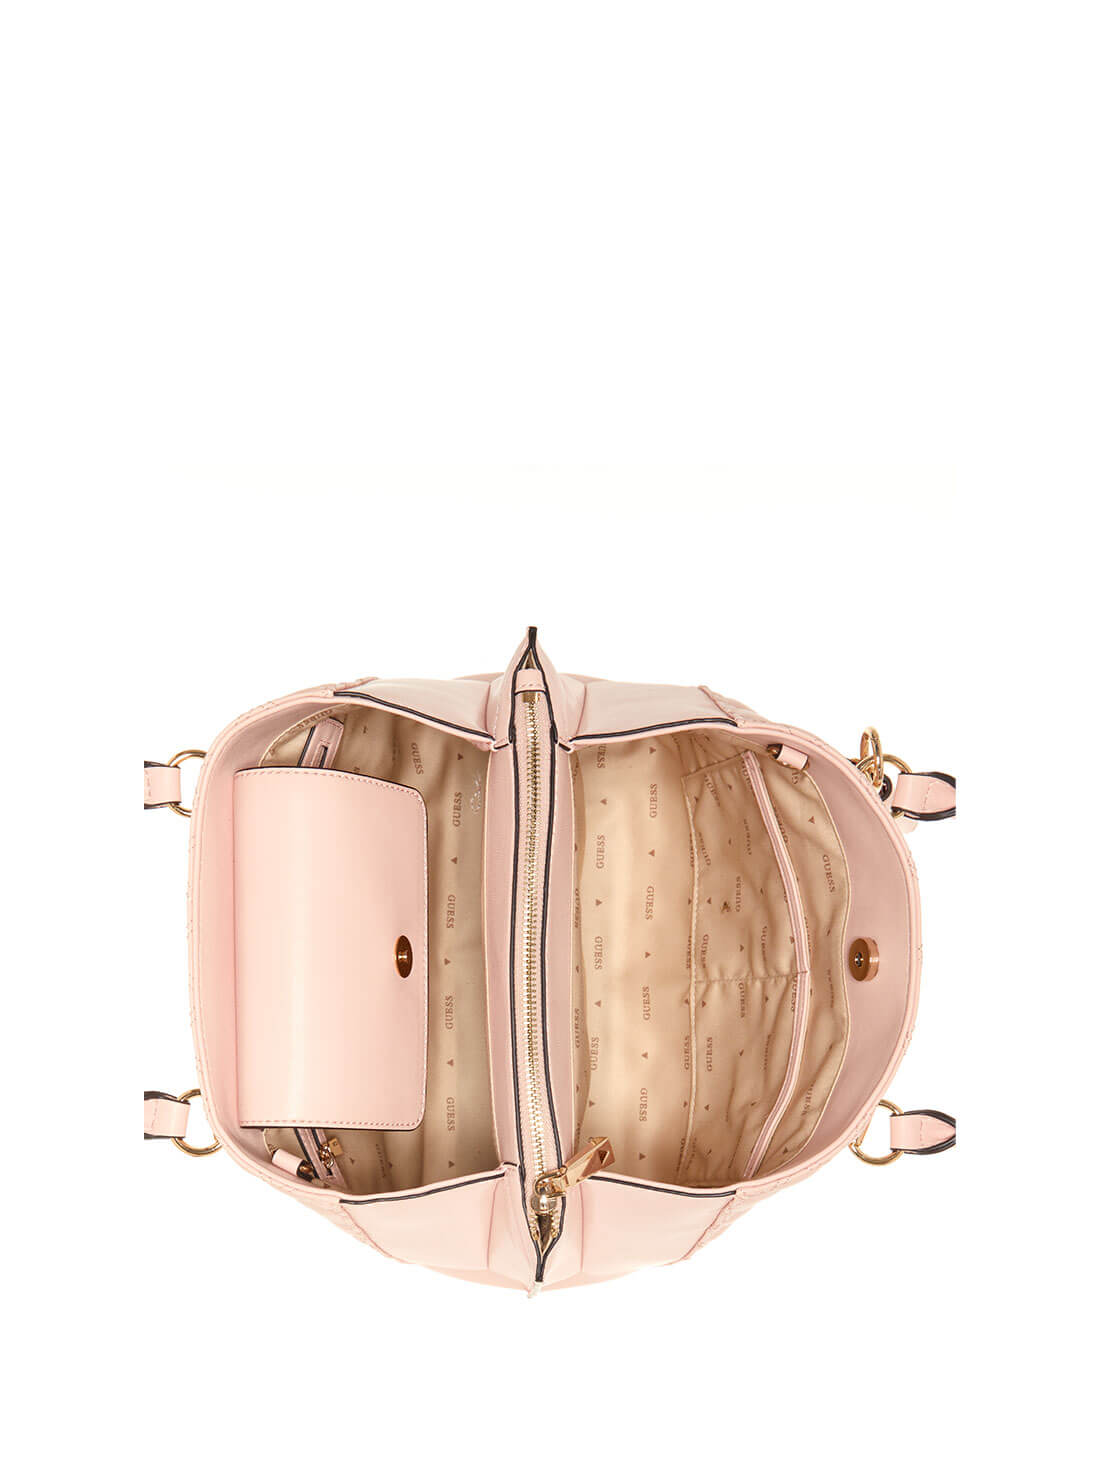 Light Pink Girlfriend Satchel Bag | GUESS Women's Handbags | inside view